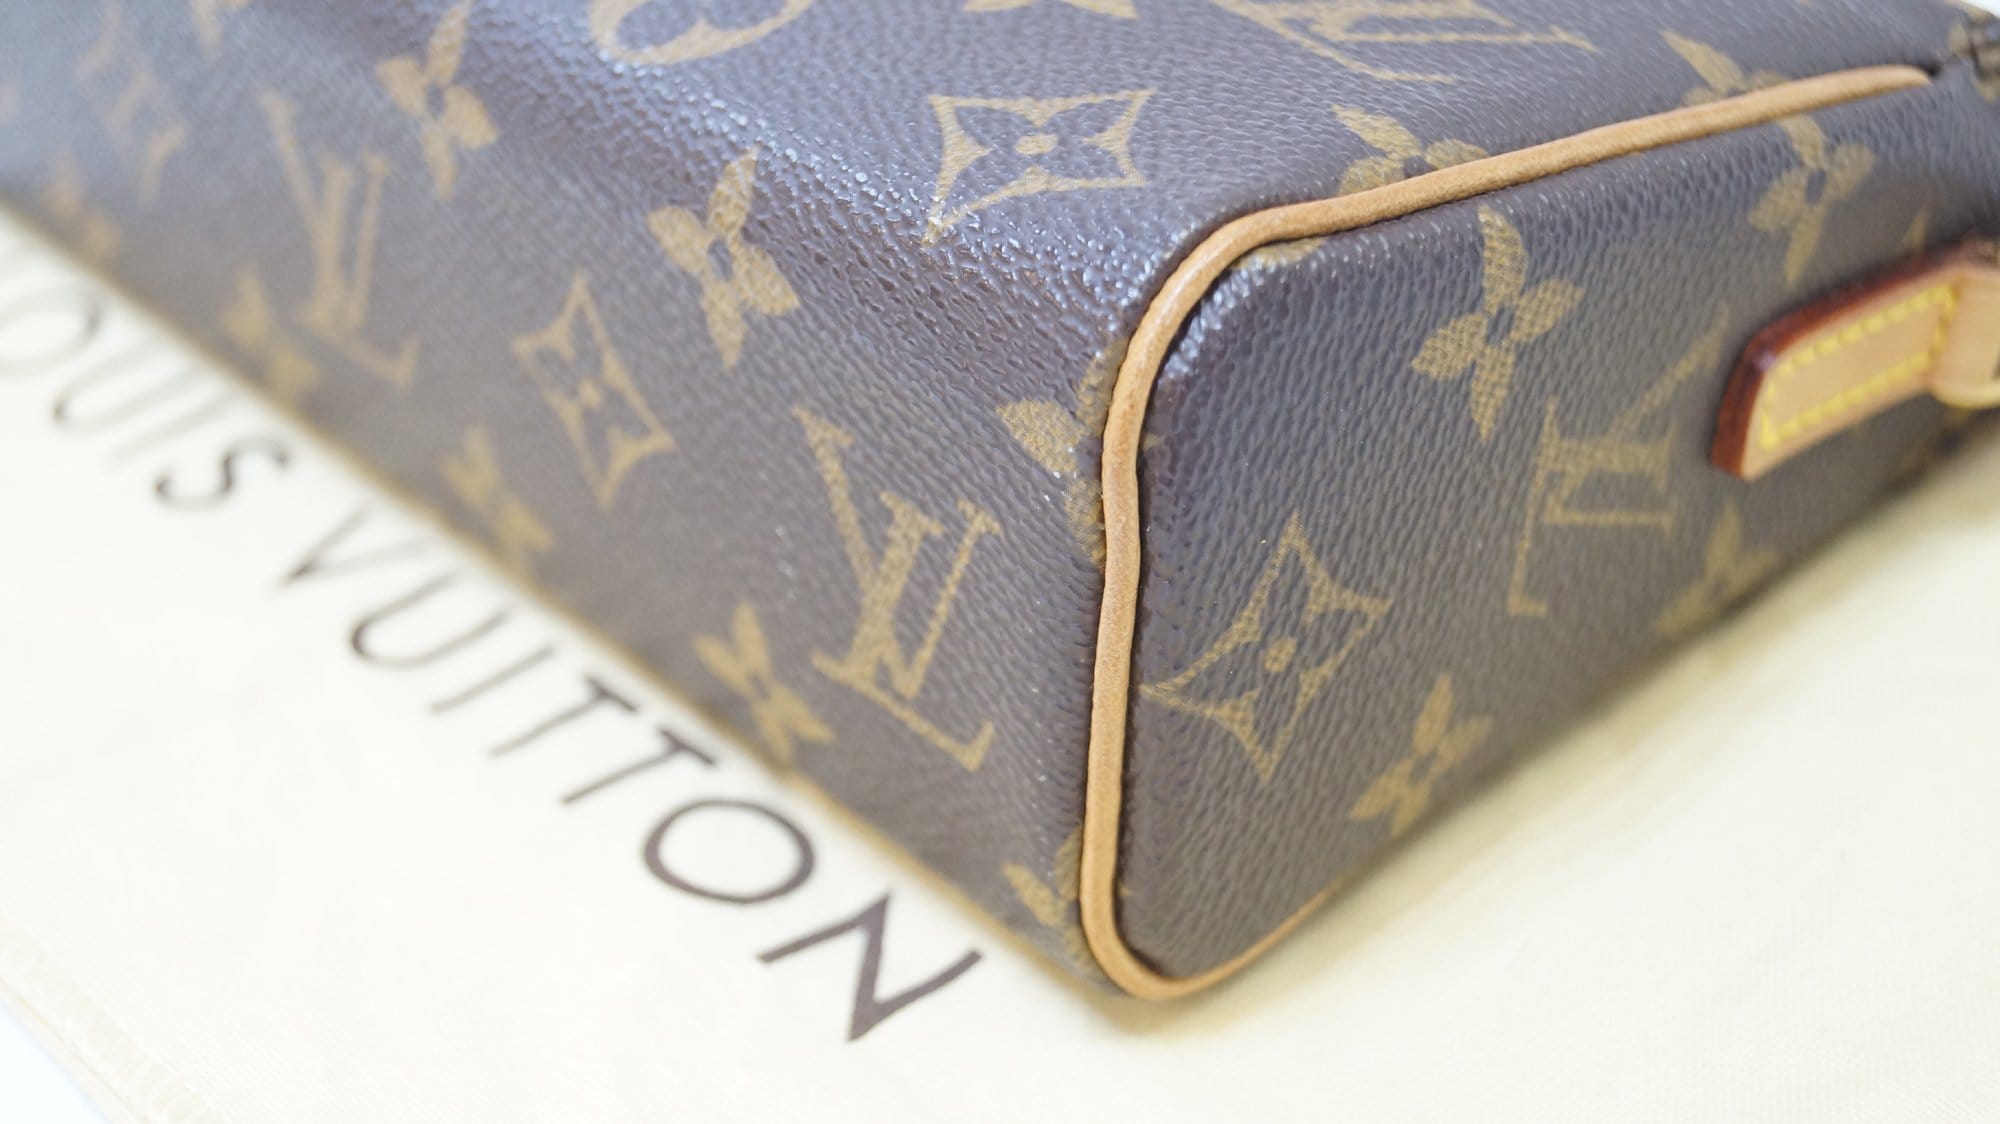 Lot - Louis Vuitton Monogram Canvas Recital Bag